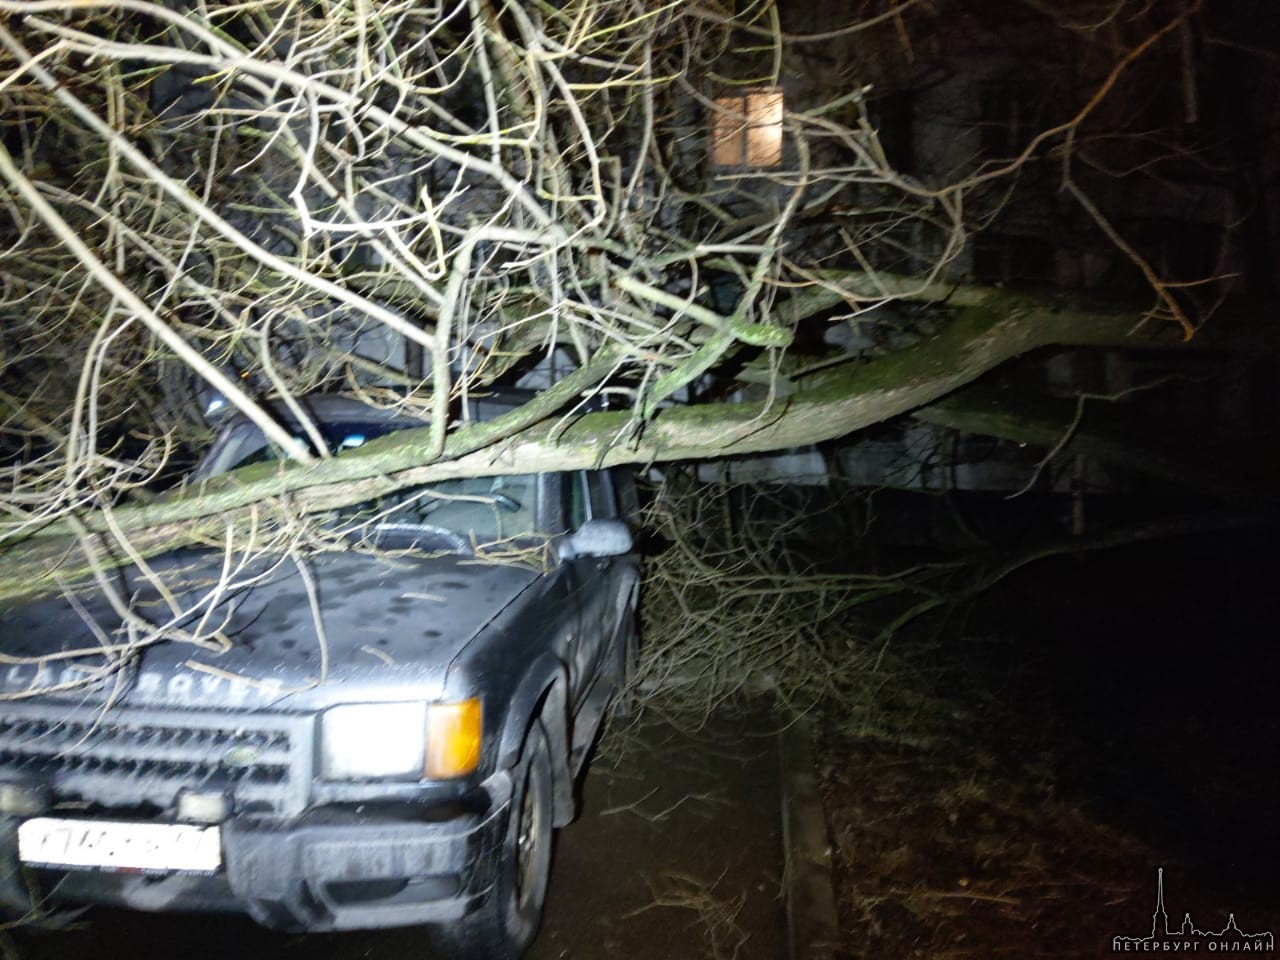 Вчера на проспекте Народного Ополчения у дома 93, дерево упало на припаркованные машины.